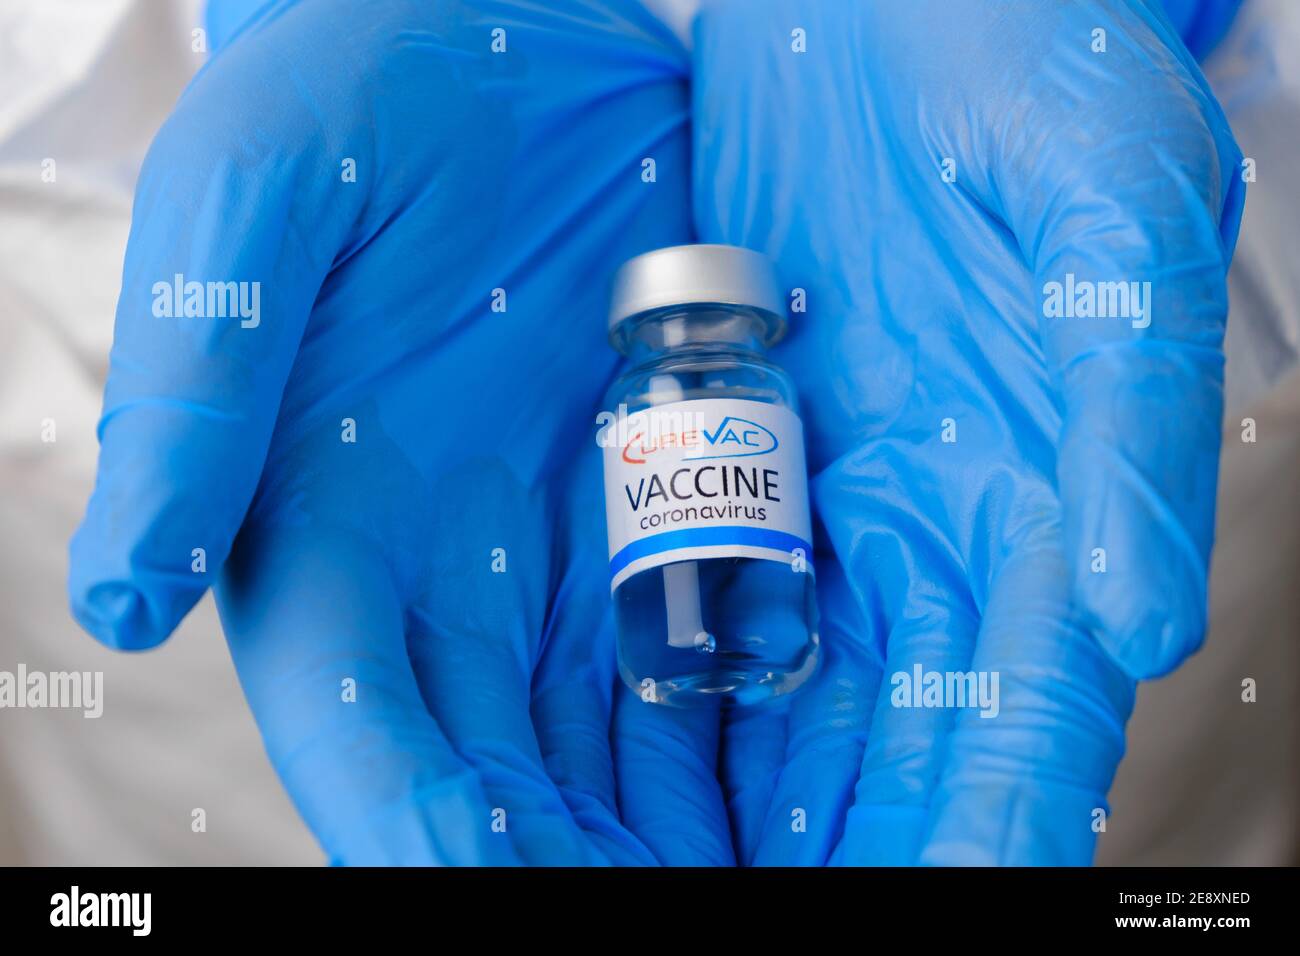 CureVac vaccino per la prevenzione del coronavirus, Covid-19, Sars-Cov-2 in medici mani in guanti di gomma blu, gennaio 2021, San Francisco, USA. Foto Stock